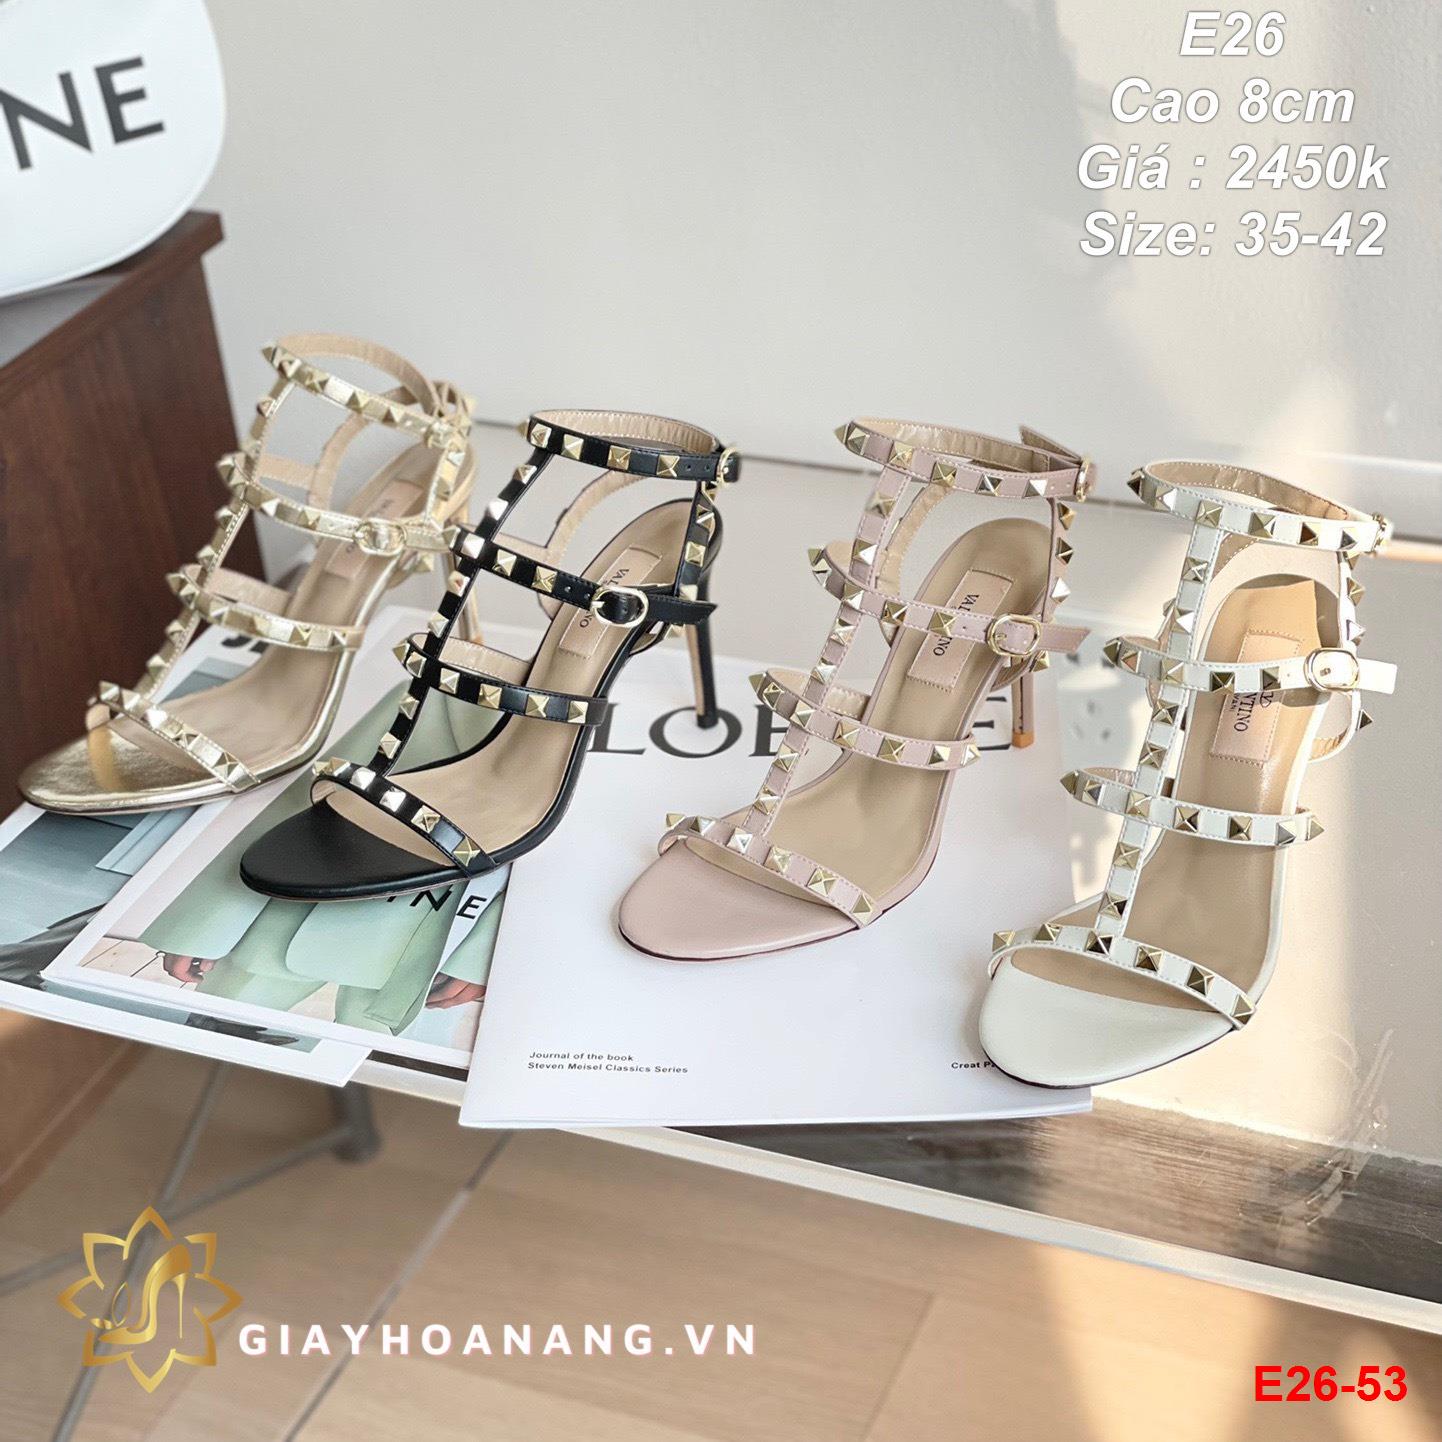 E26-53 Valentino sandal cao 8cm siêu cấp